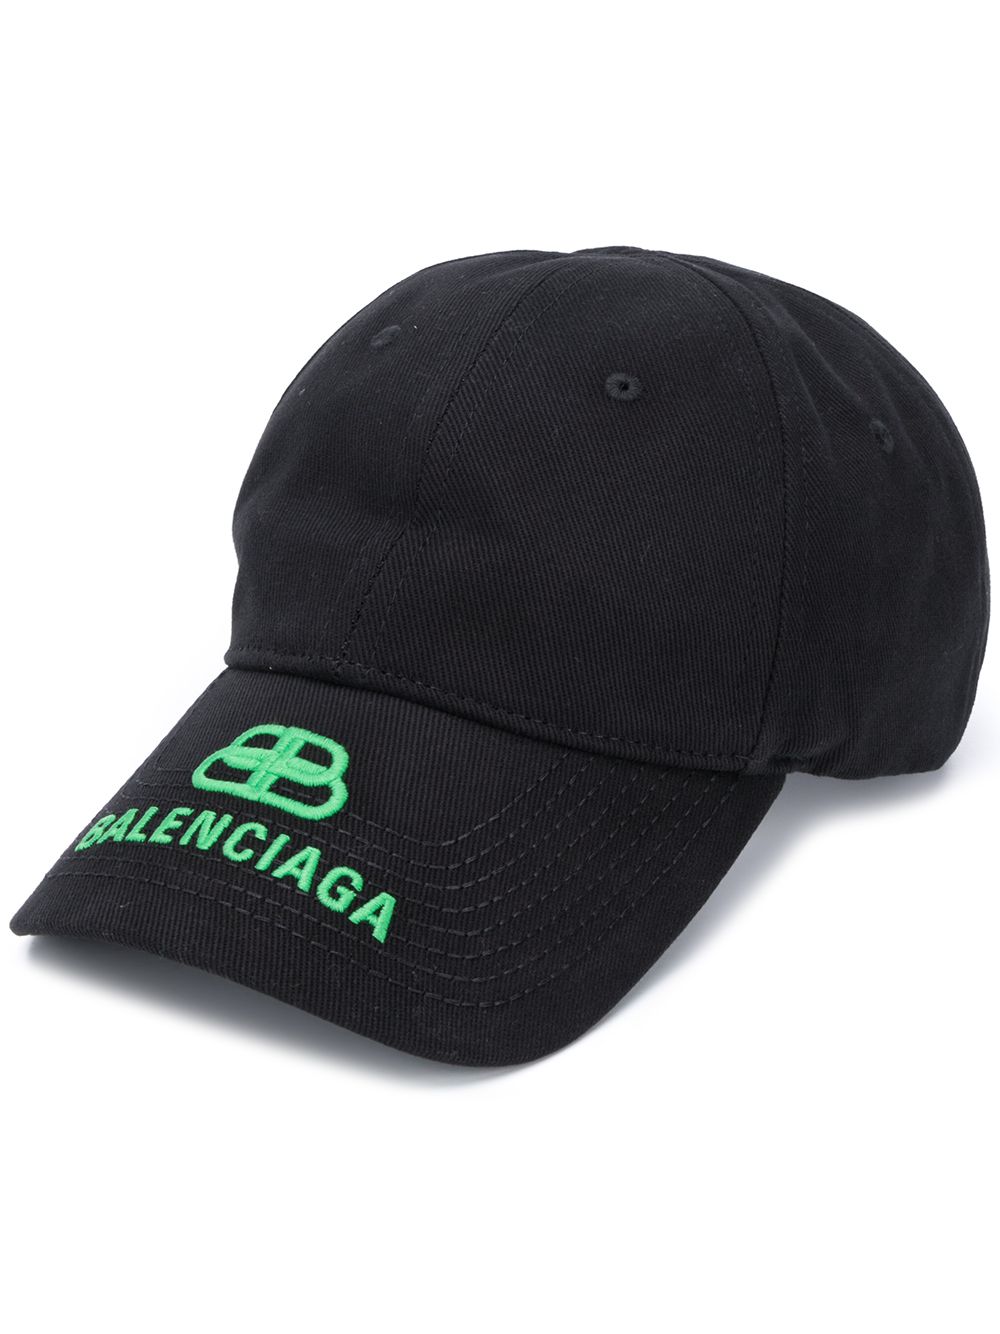 BALENCIAGA Cappellino da baseball in cotone nero con logo Balenciaga verde ricamato